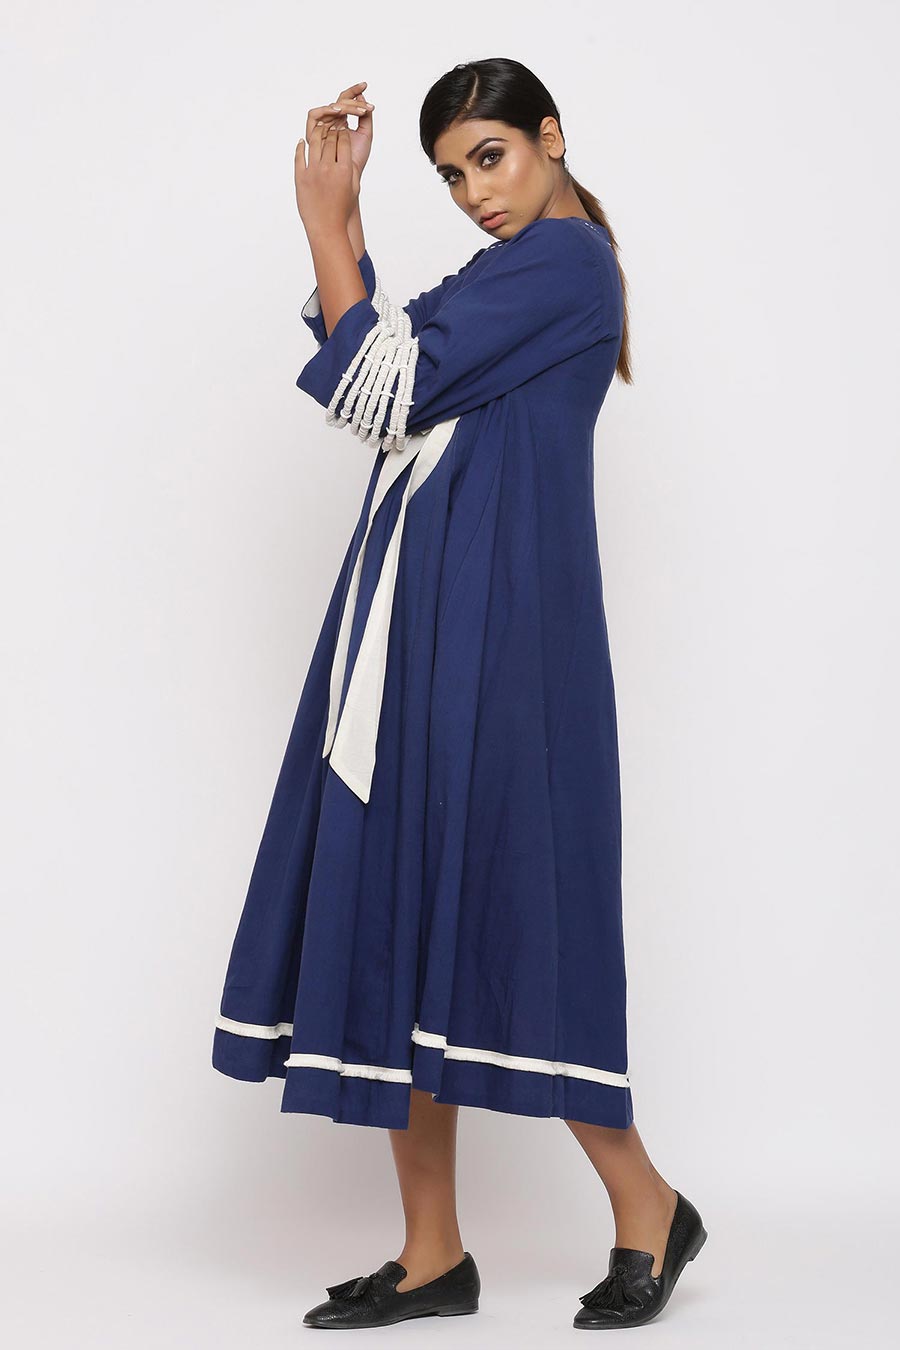 Zahara Blue Angrakha Tunic Dress